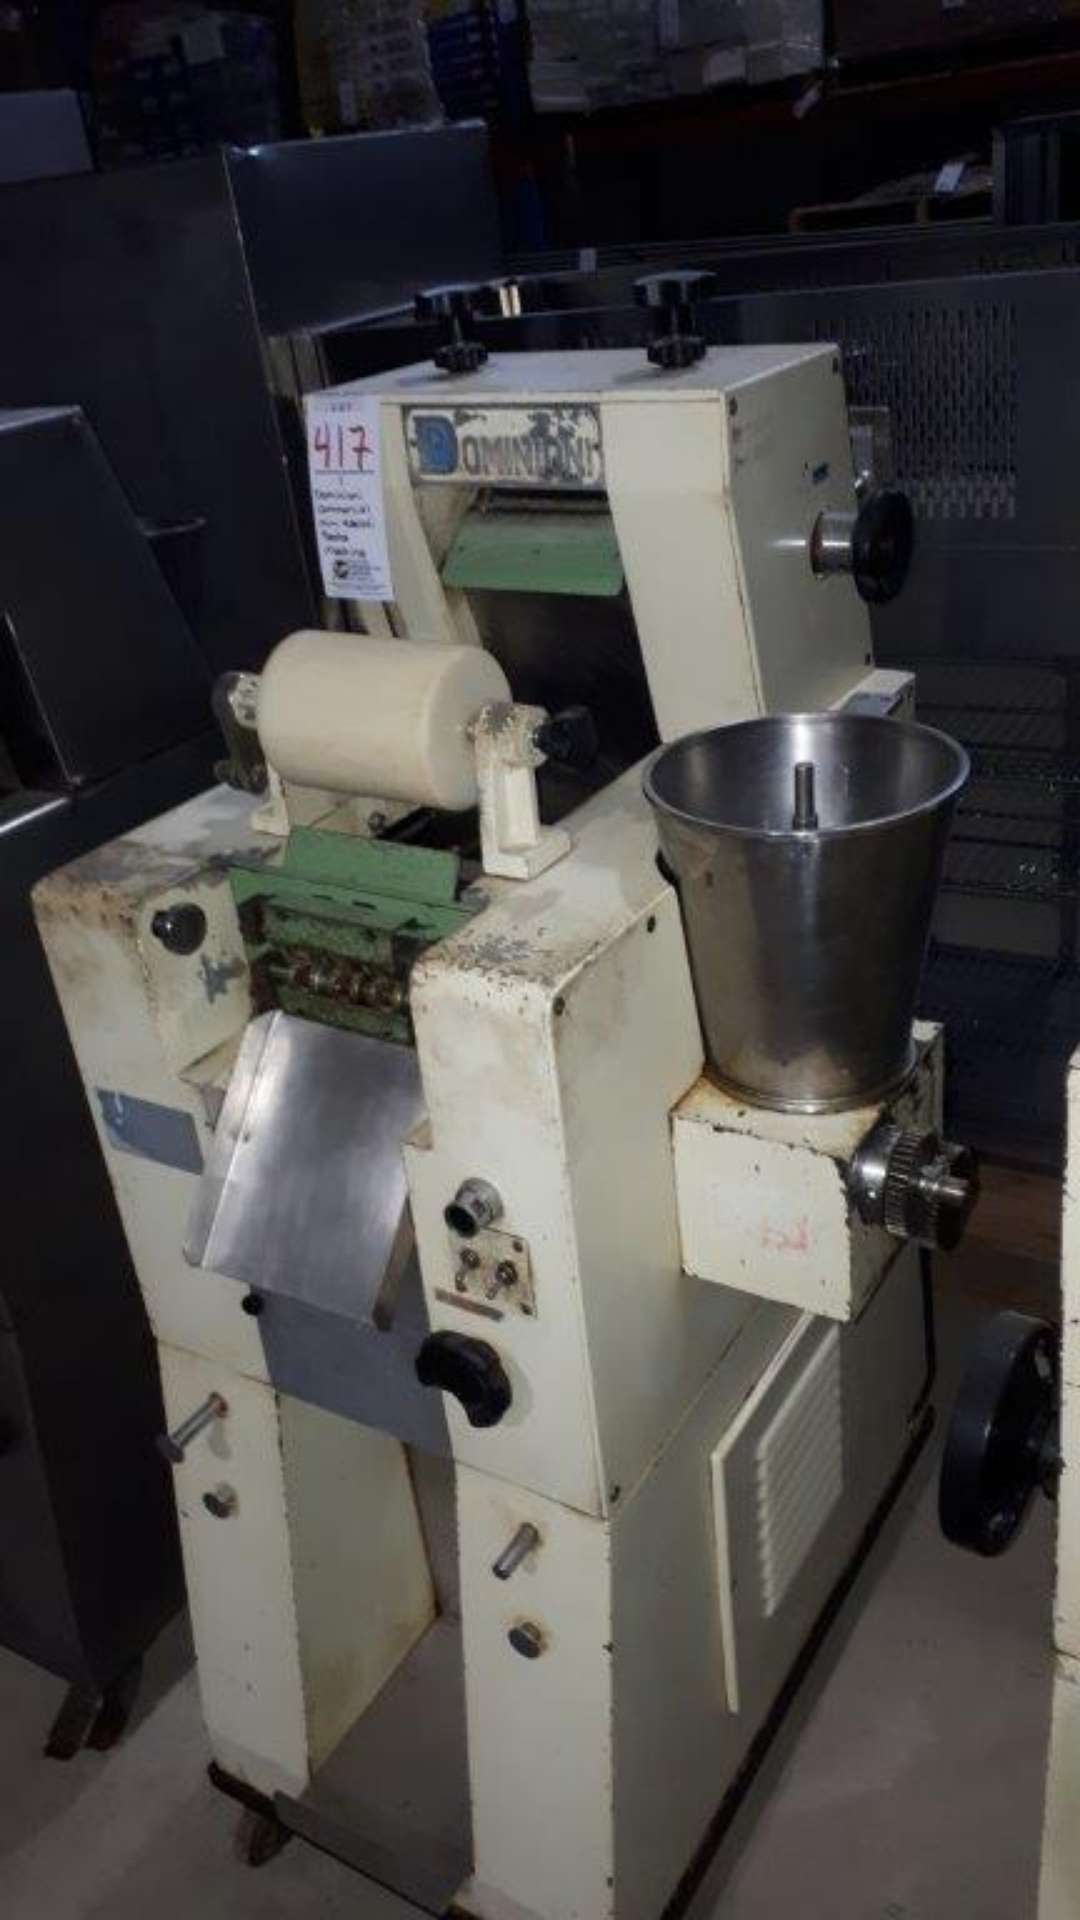 Dominioni Commercial mini ravioli pasta machine - Image 2 of 3